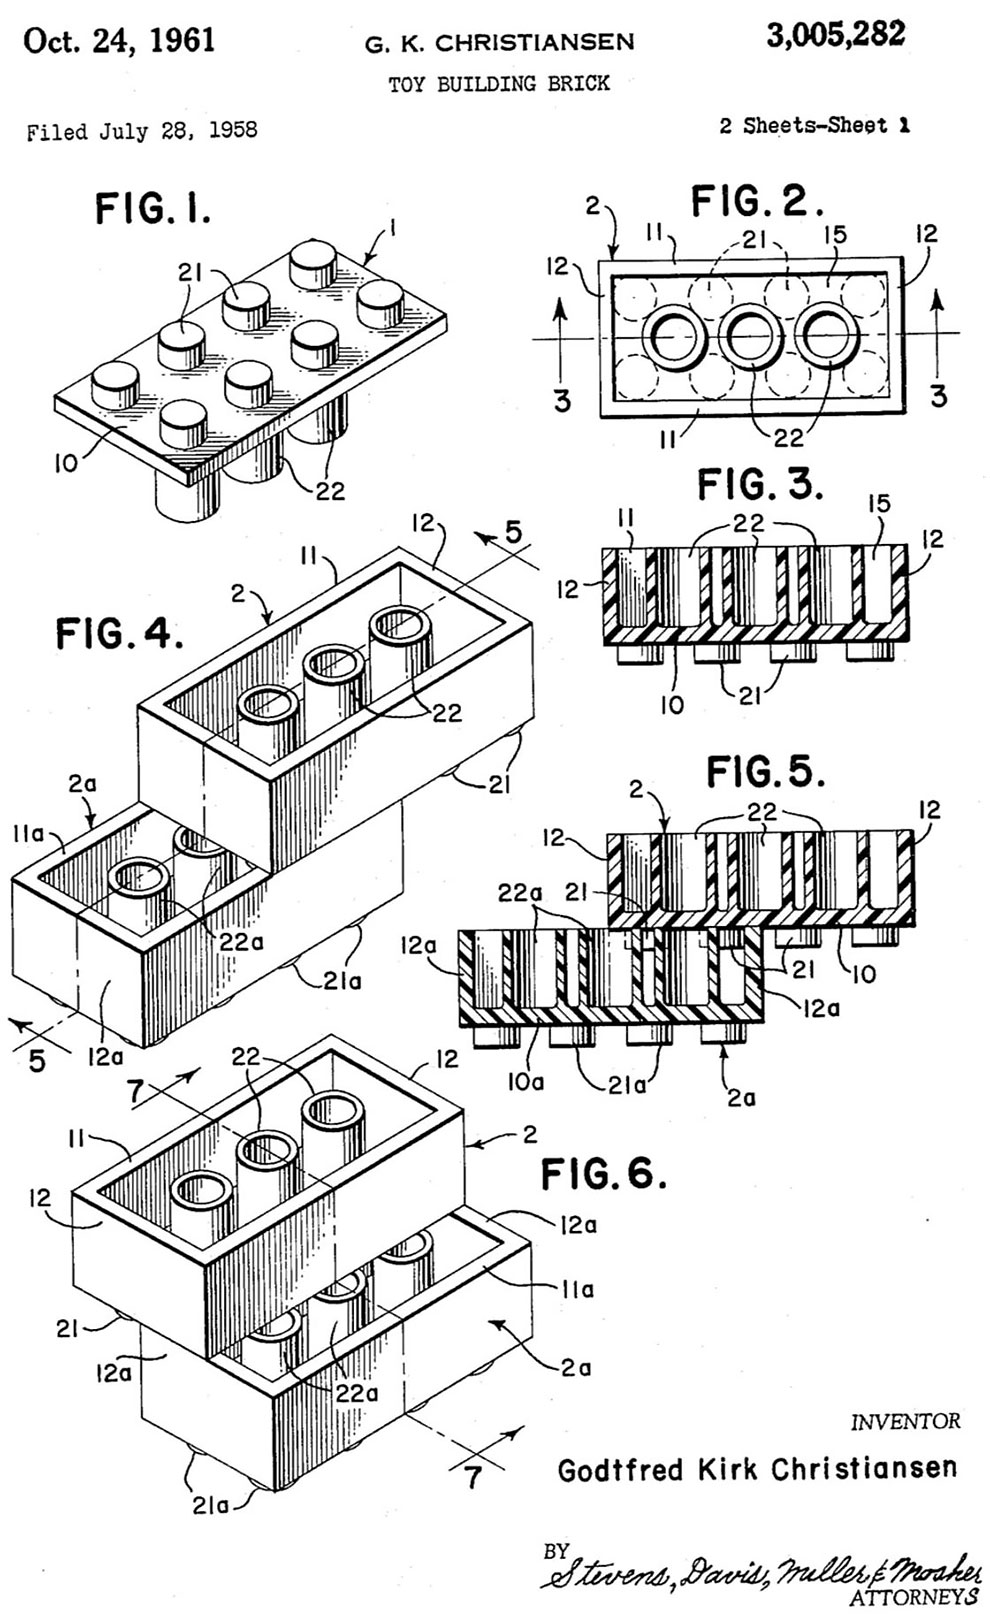 La patente original del ladrillo LEGO que revolucionó el mundo de los juguetes